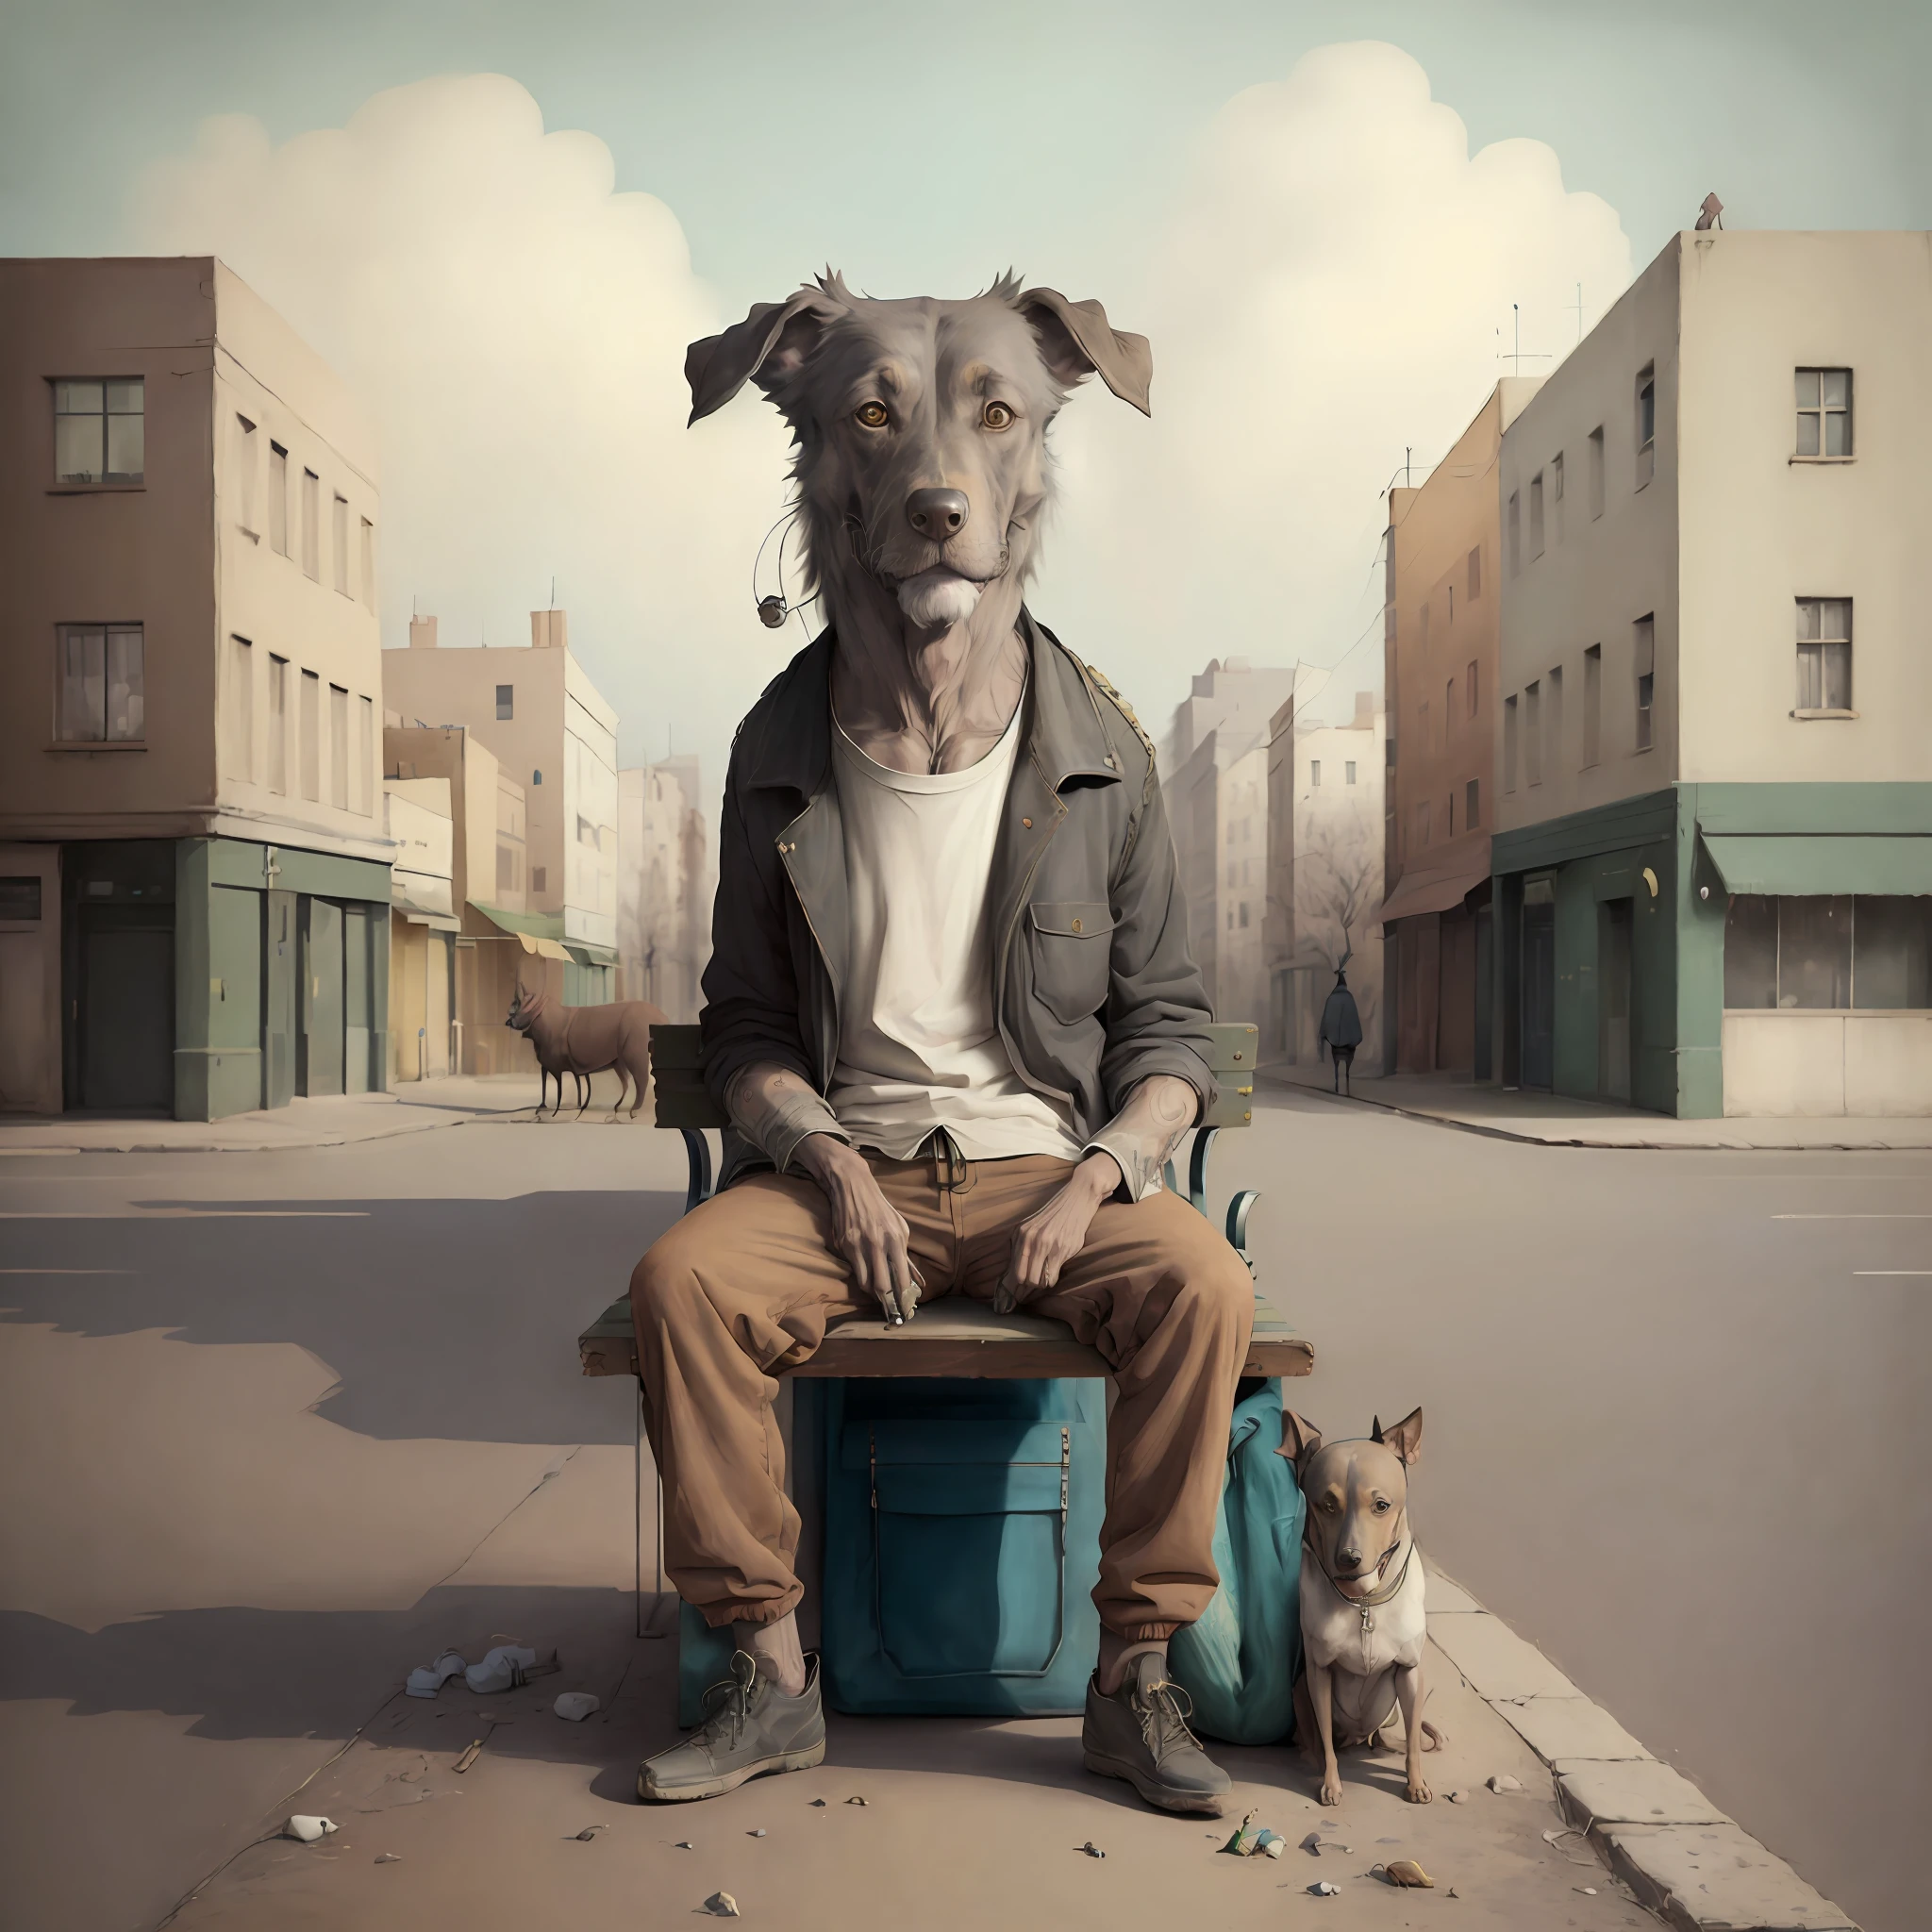 ((((sehr detailliert))))Surrealismus, Minimalismus,Ein Obdachloser sitzt auf einer Bank,Ein Hund sitzt neben ihm